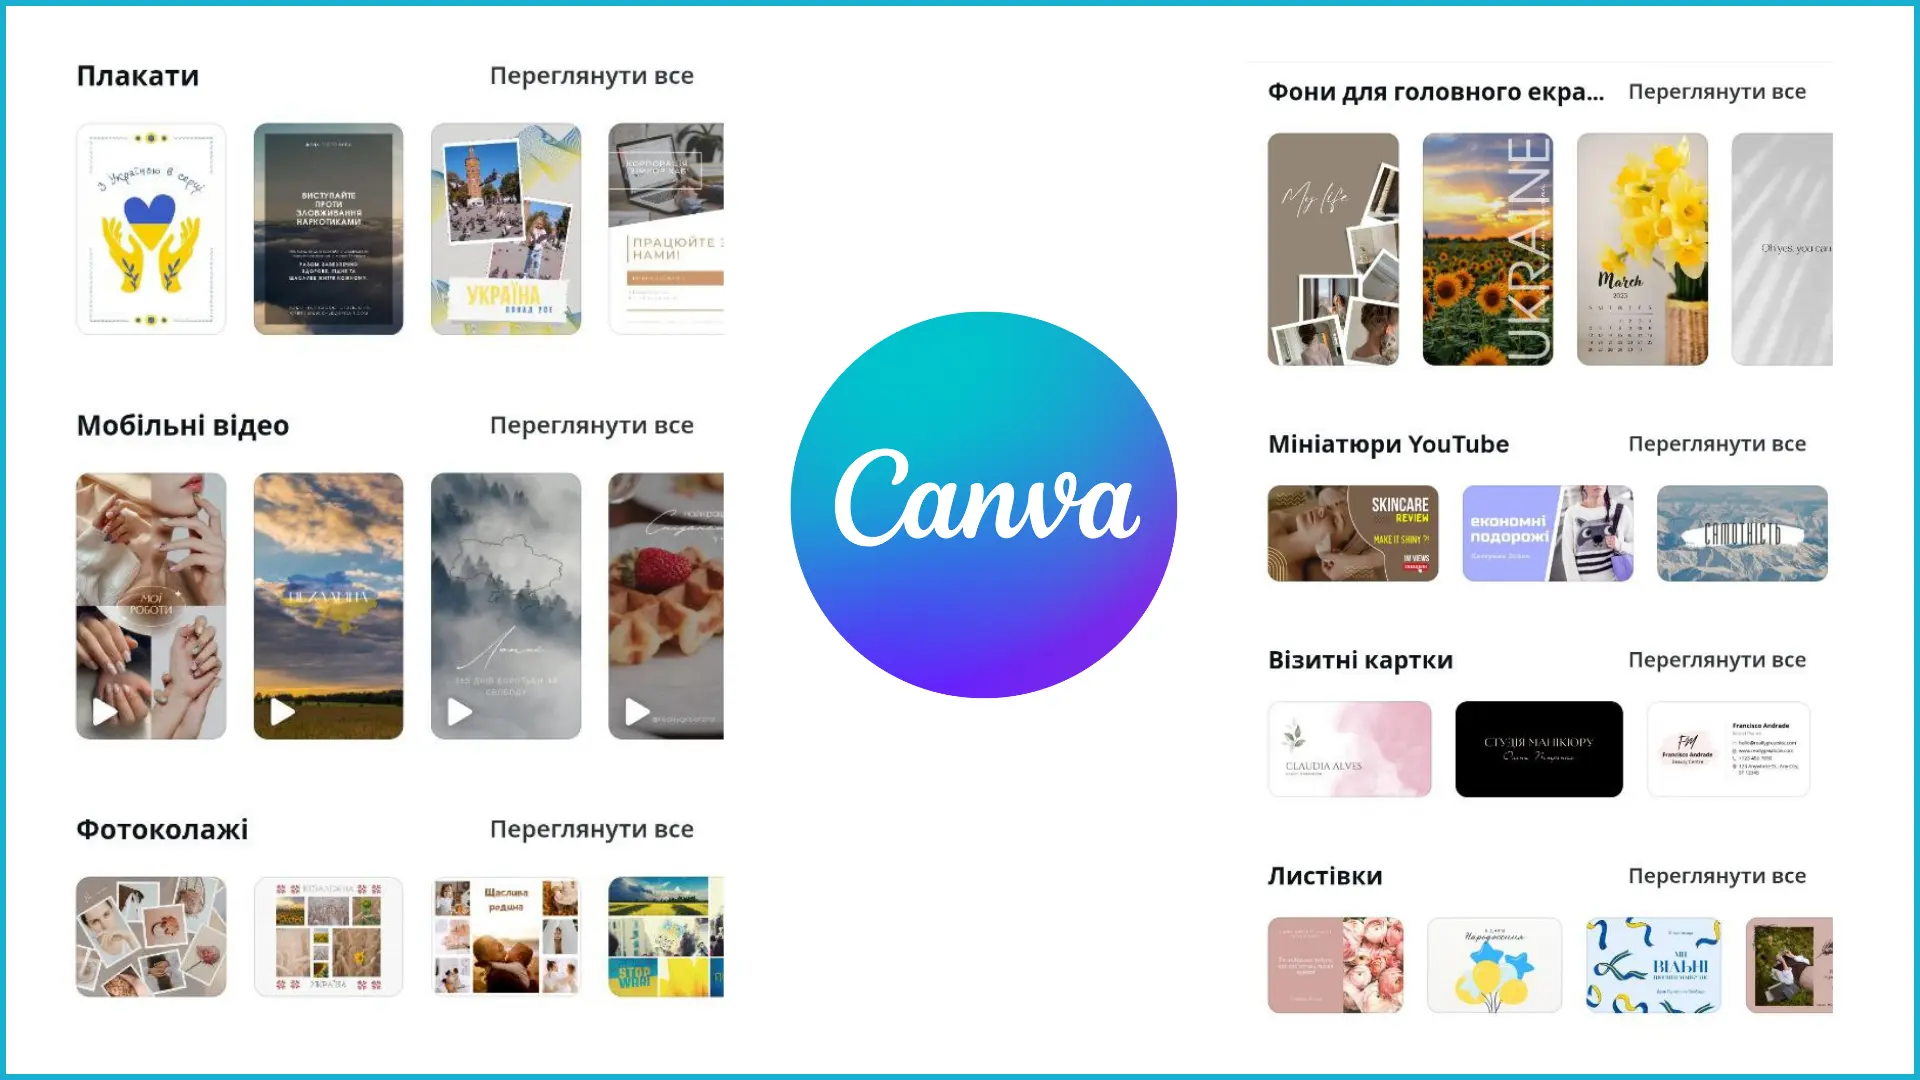 Приложения play market для обработки фотографий - Canva